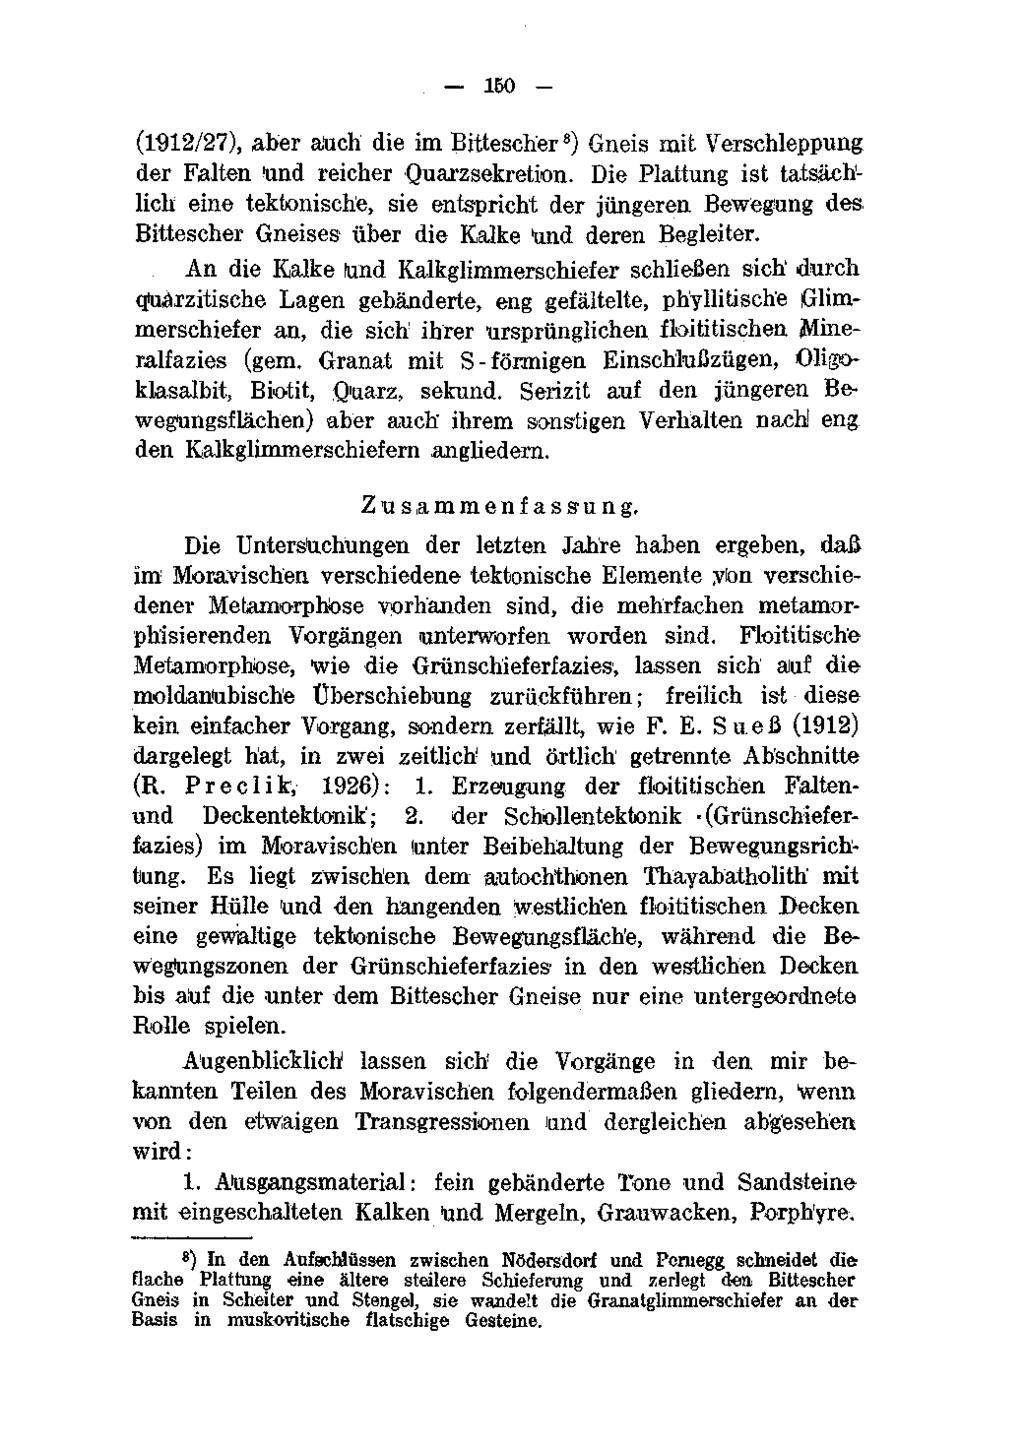 150 - (1912/27), aber auch die im Bittescher 8 ) Gneis mit Verschleppung der Falten Und reicher Quarzsekretion.